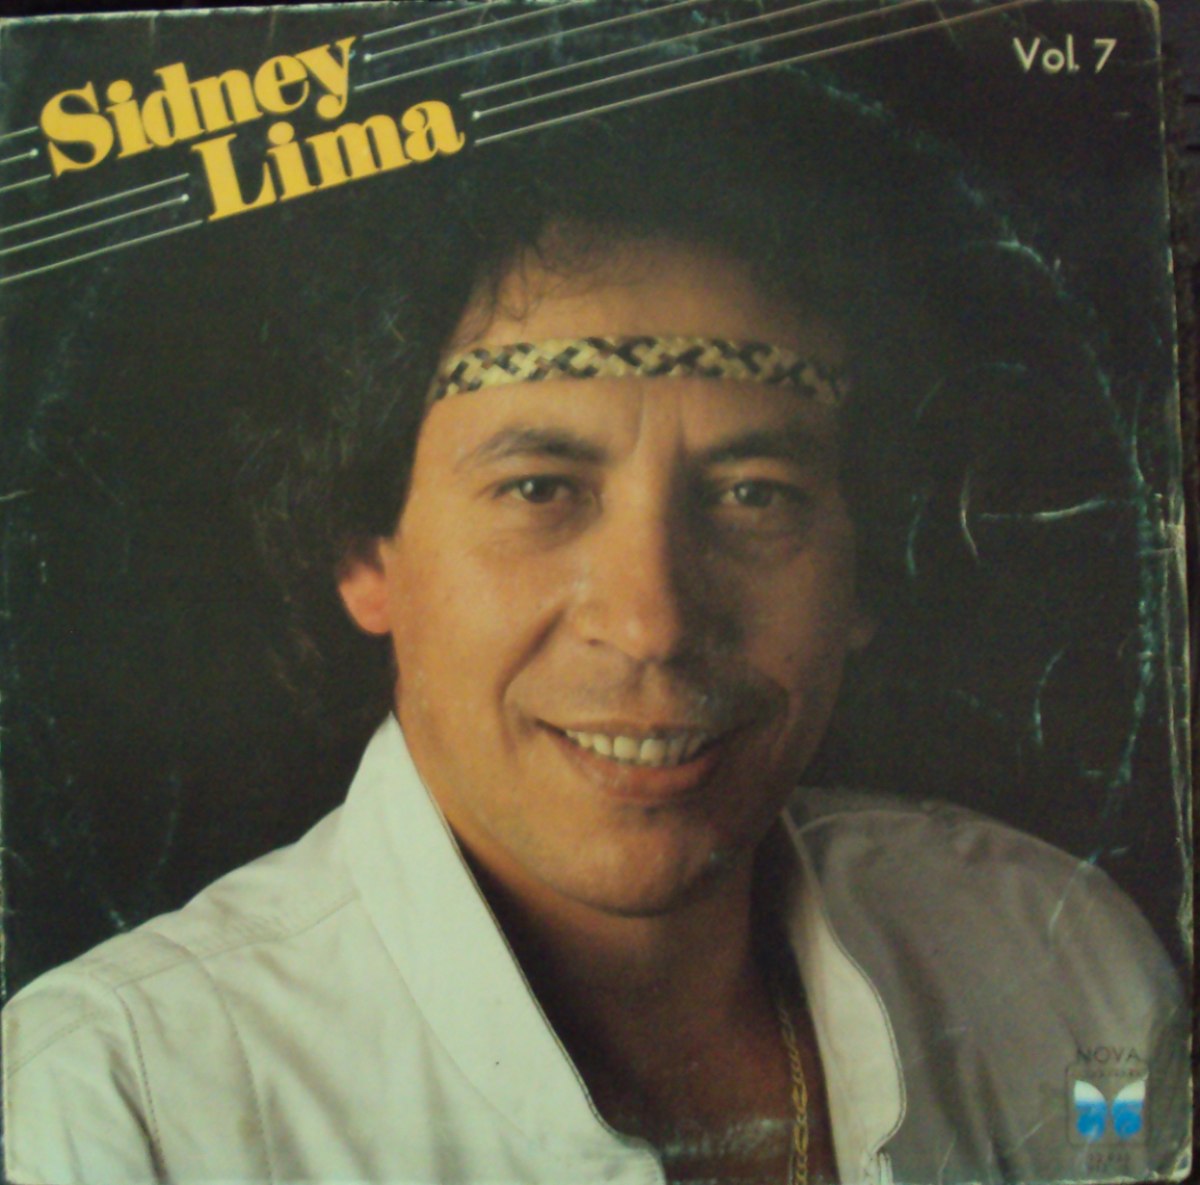 LP Encontro com Sidnei Lima Vol. 7